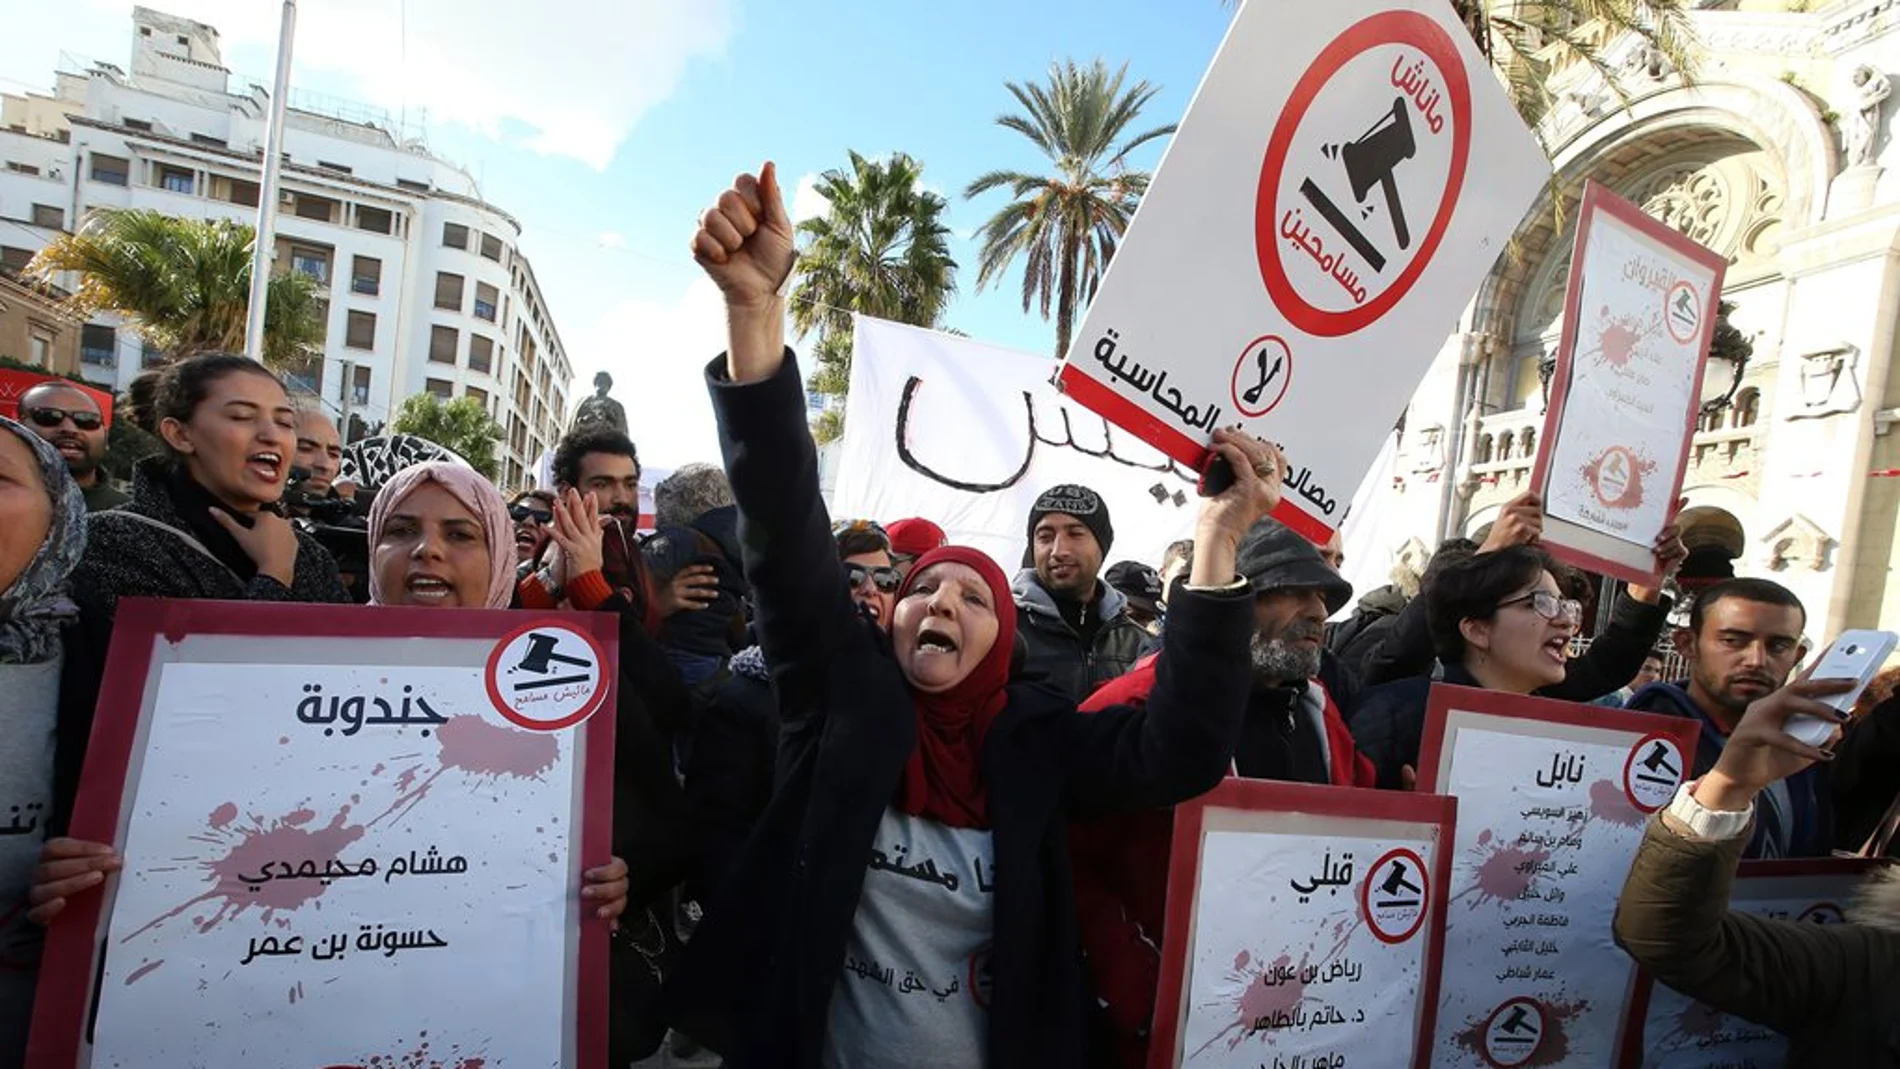 Túnez celebra la revolución de 2011 con los mismos problemas que la desataron